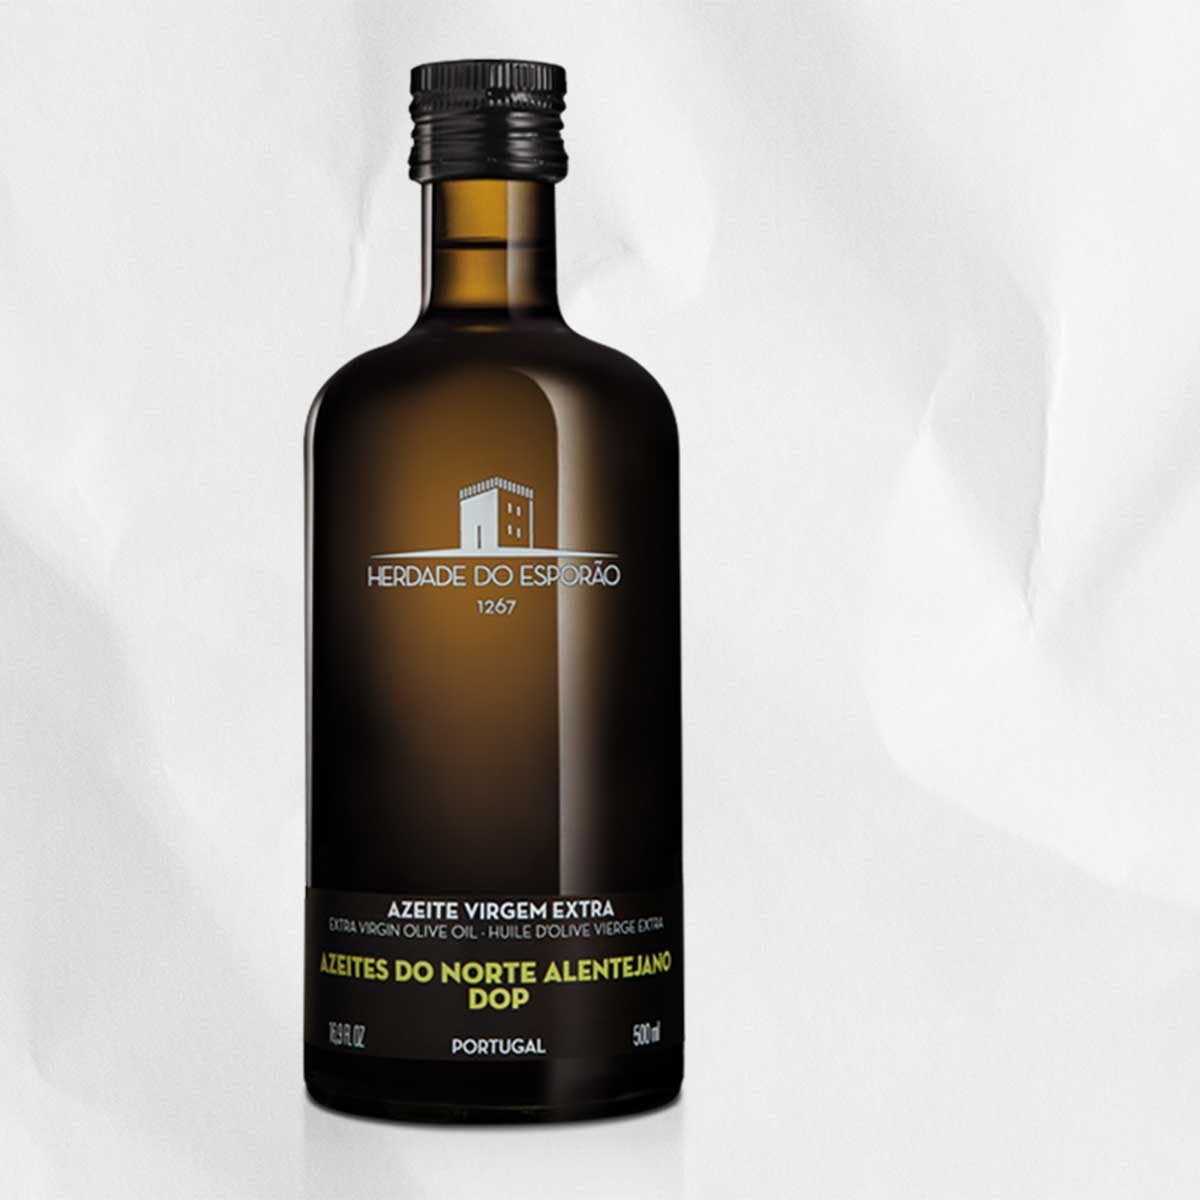 A bottle of Herdade do Esporao Azeites do Norte Alentejano Olive Oil